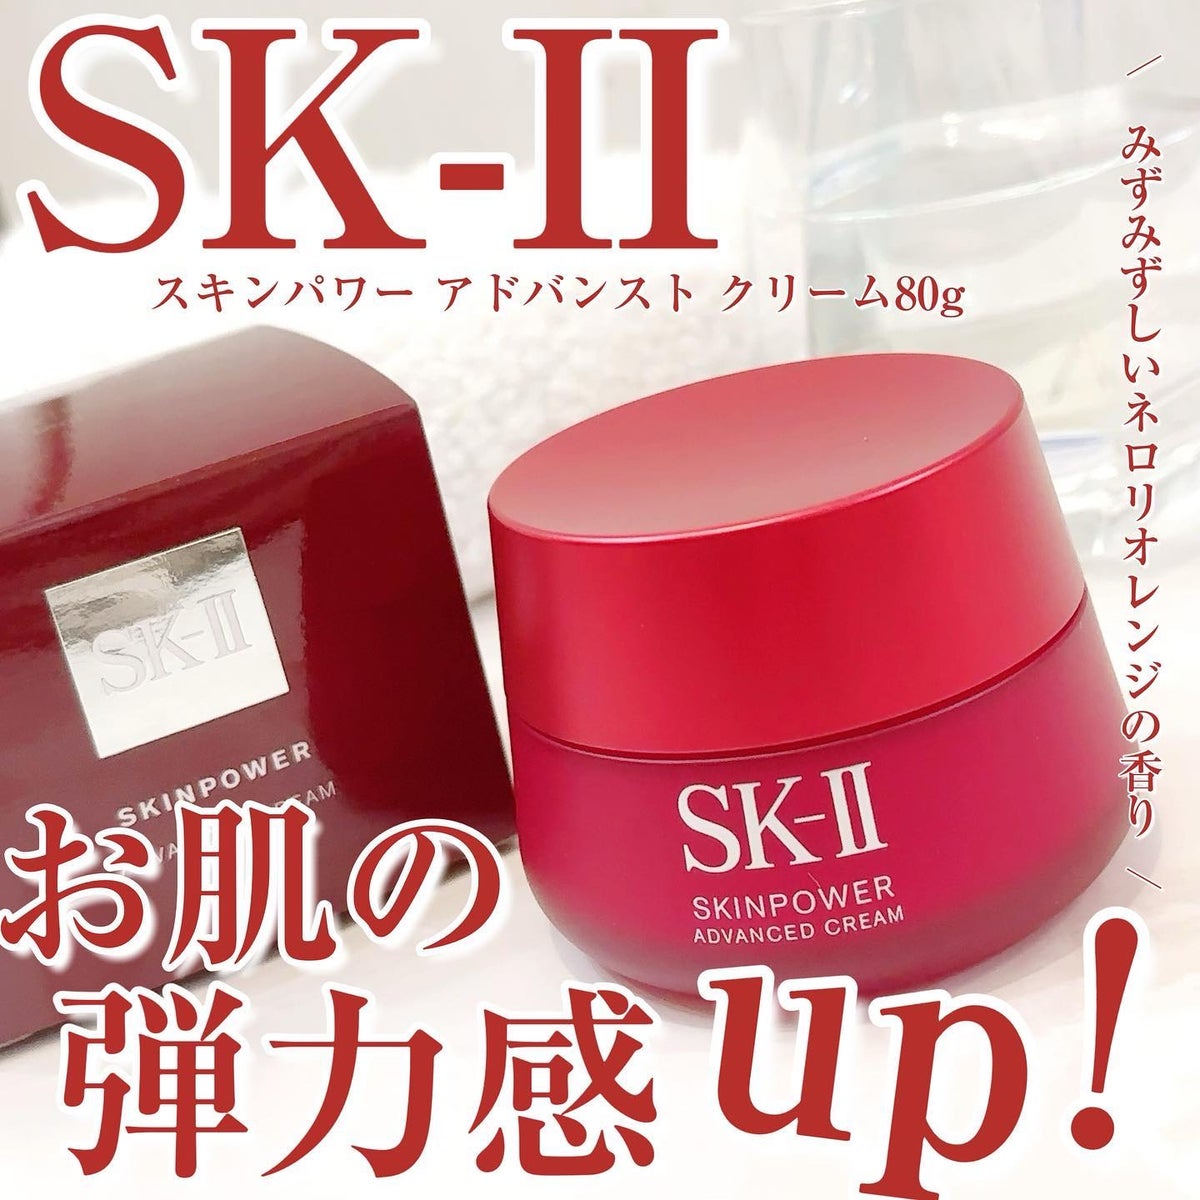 スキンケア/基礎化粧品【新品・正規品】SK-II スキンパワークリーム80g スパチュラ付き